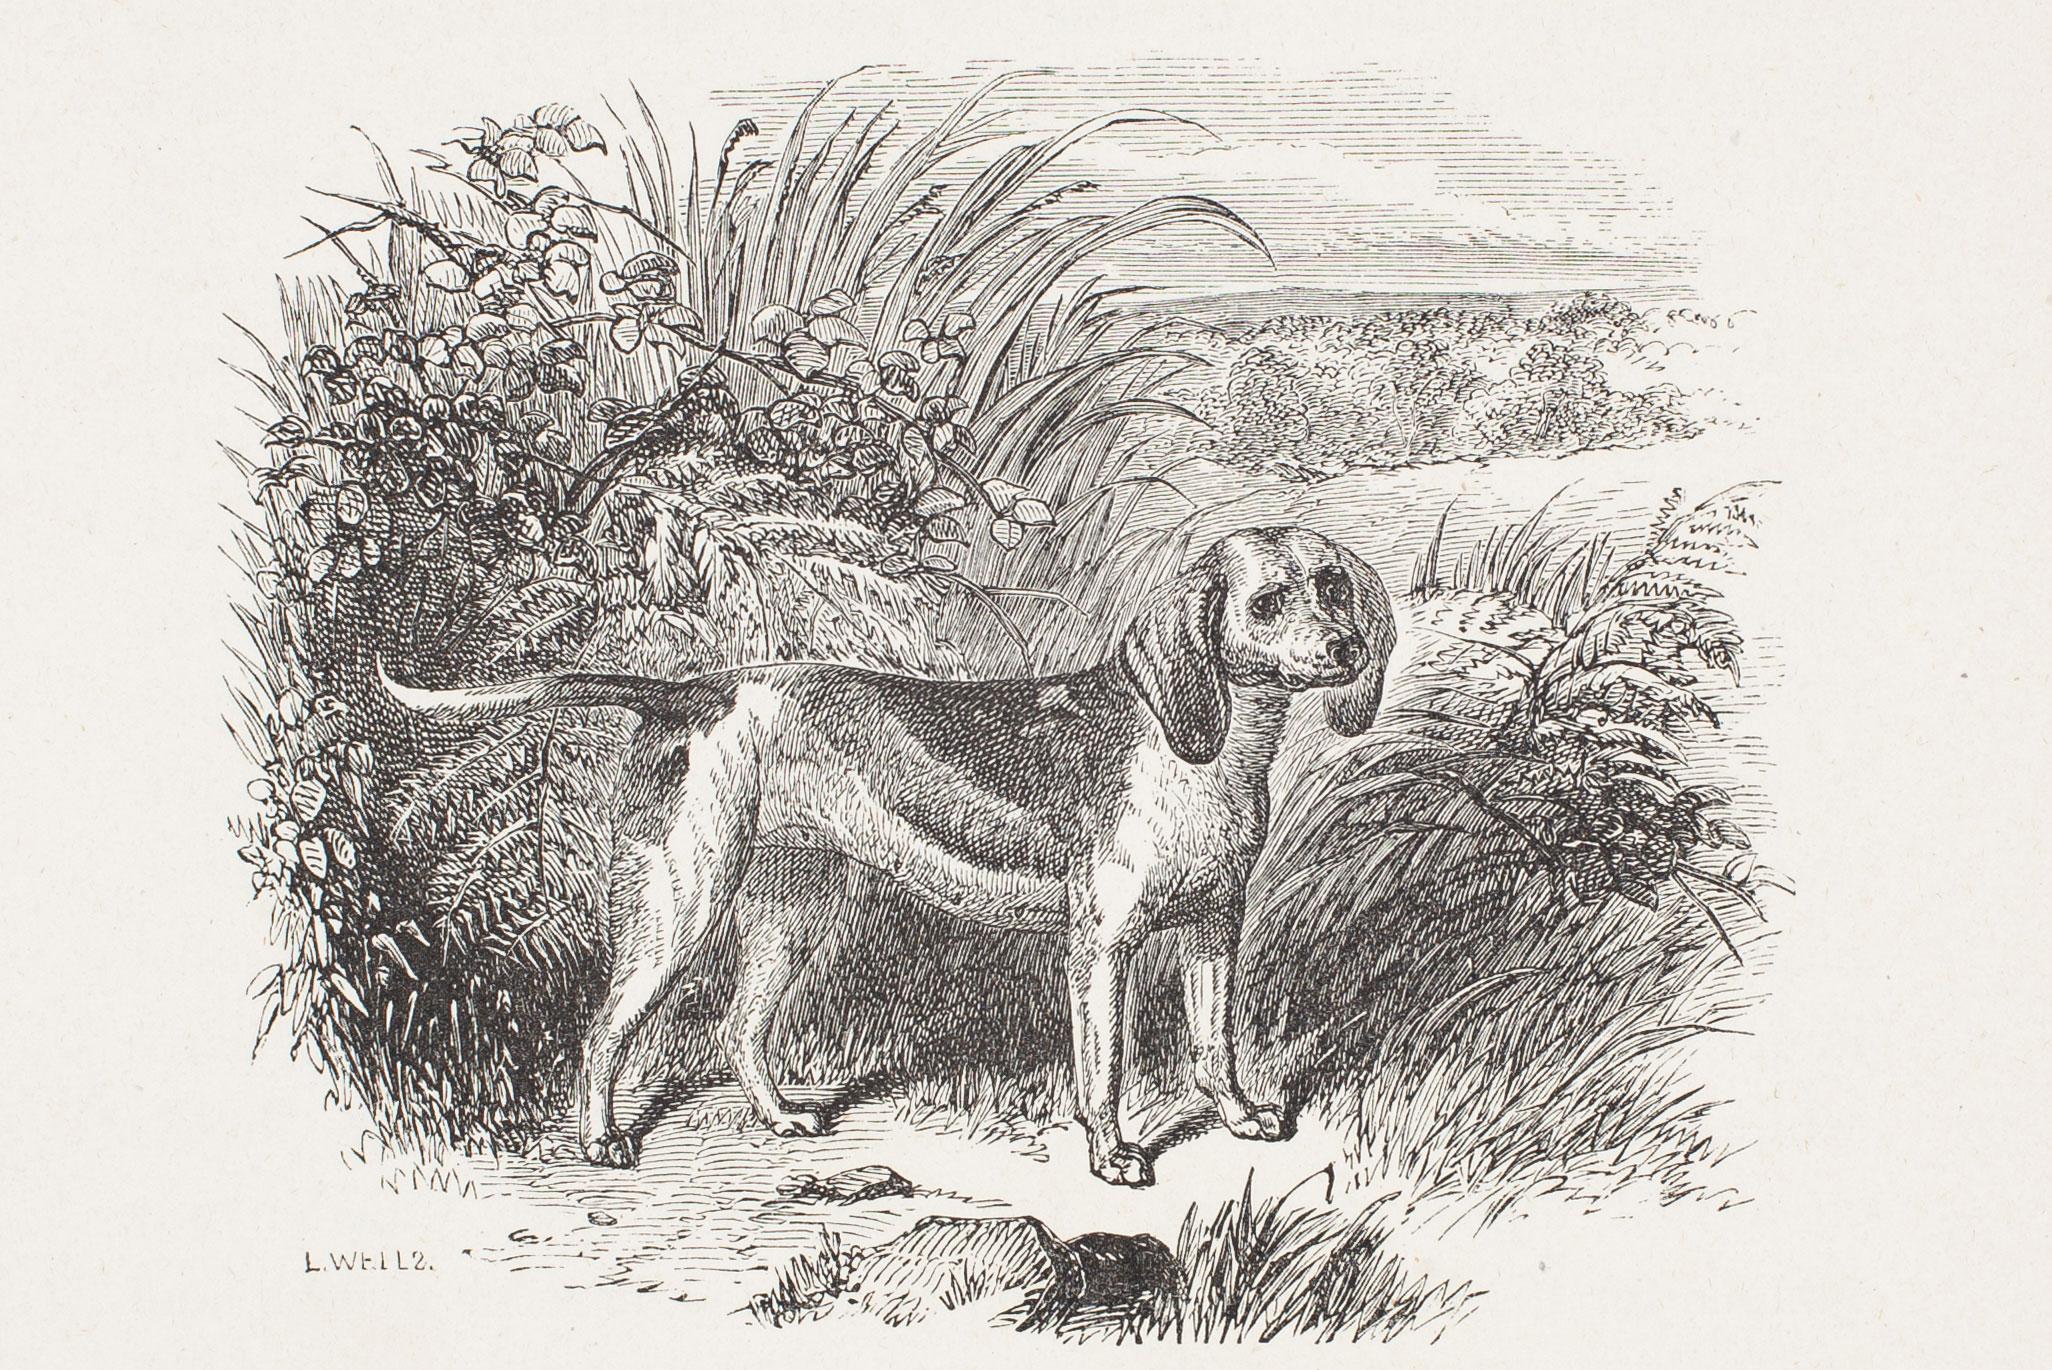 L. Wells Landscape Print - "Barmaid, " a Dwarf Beagle